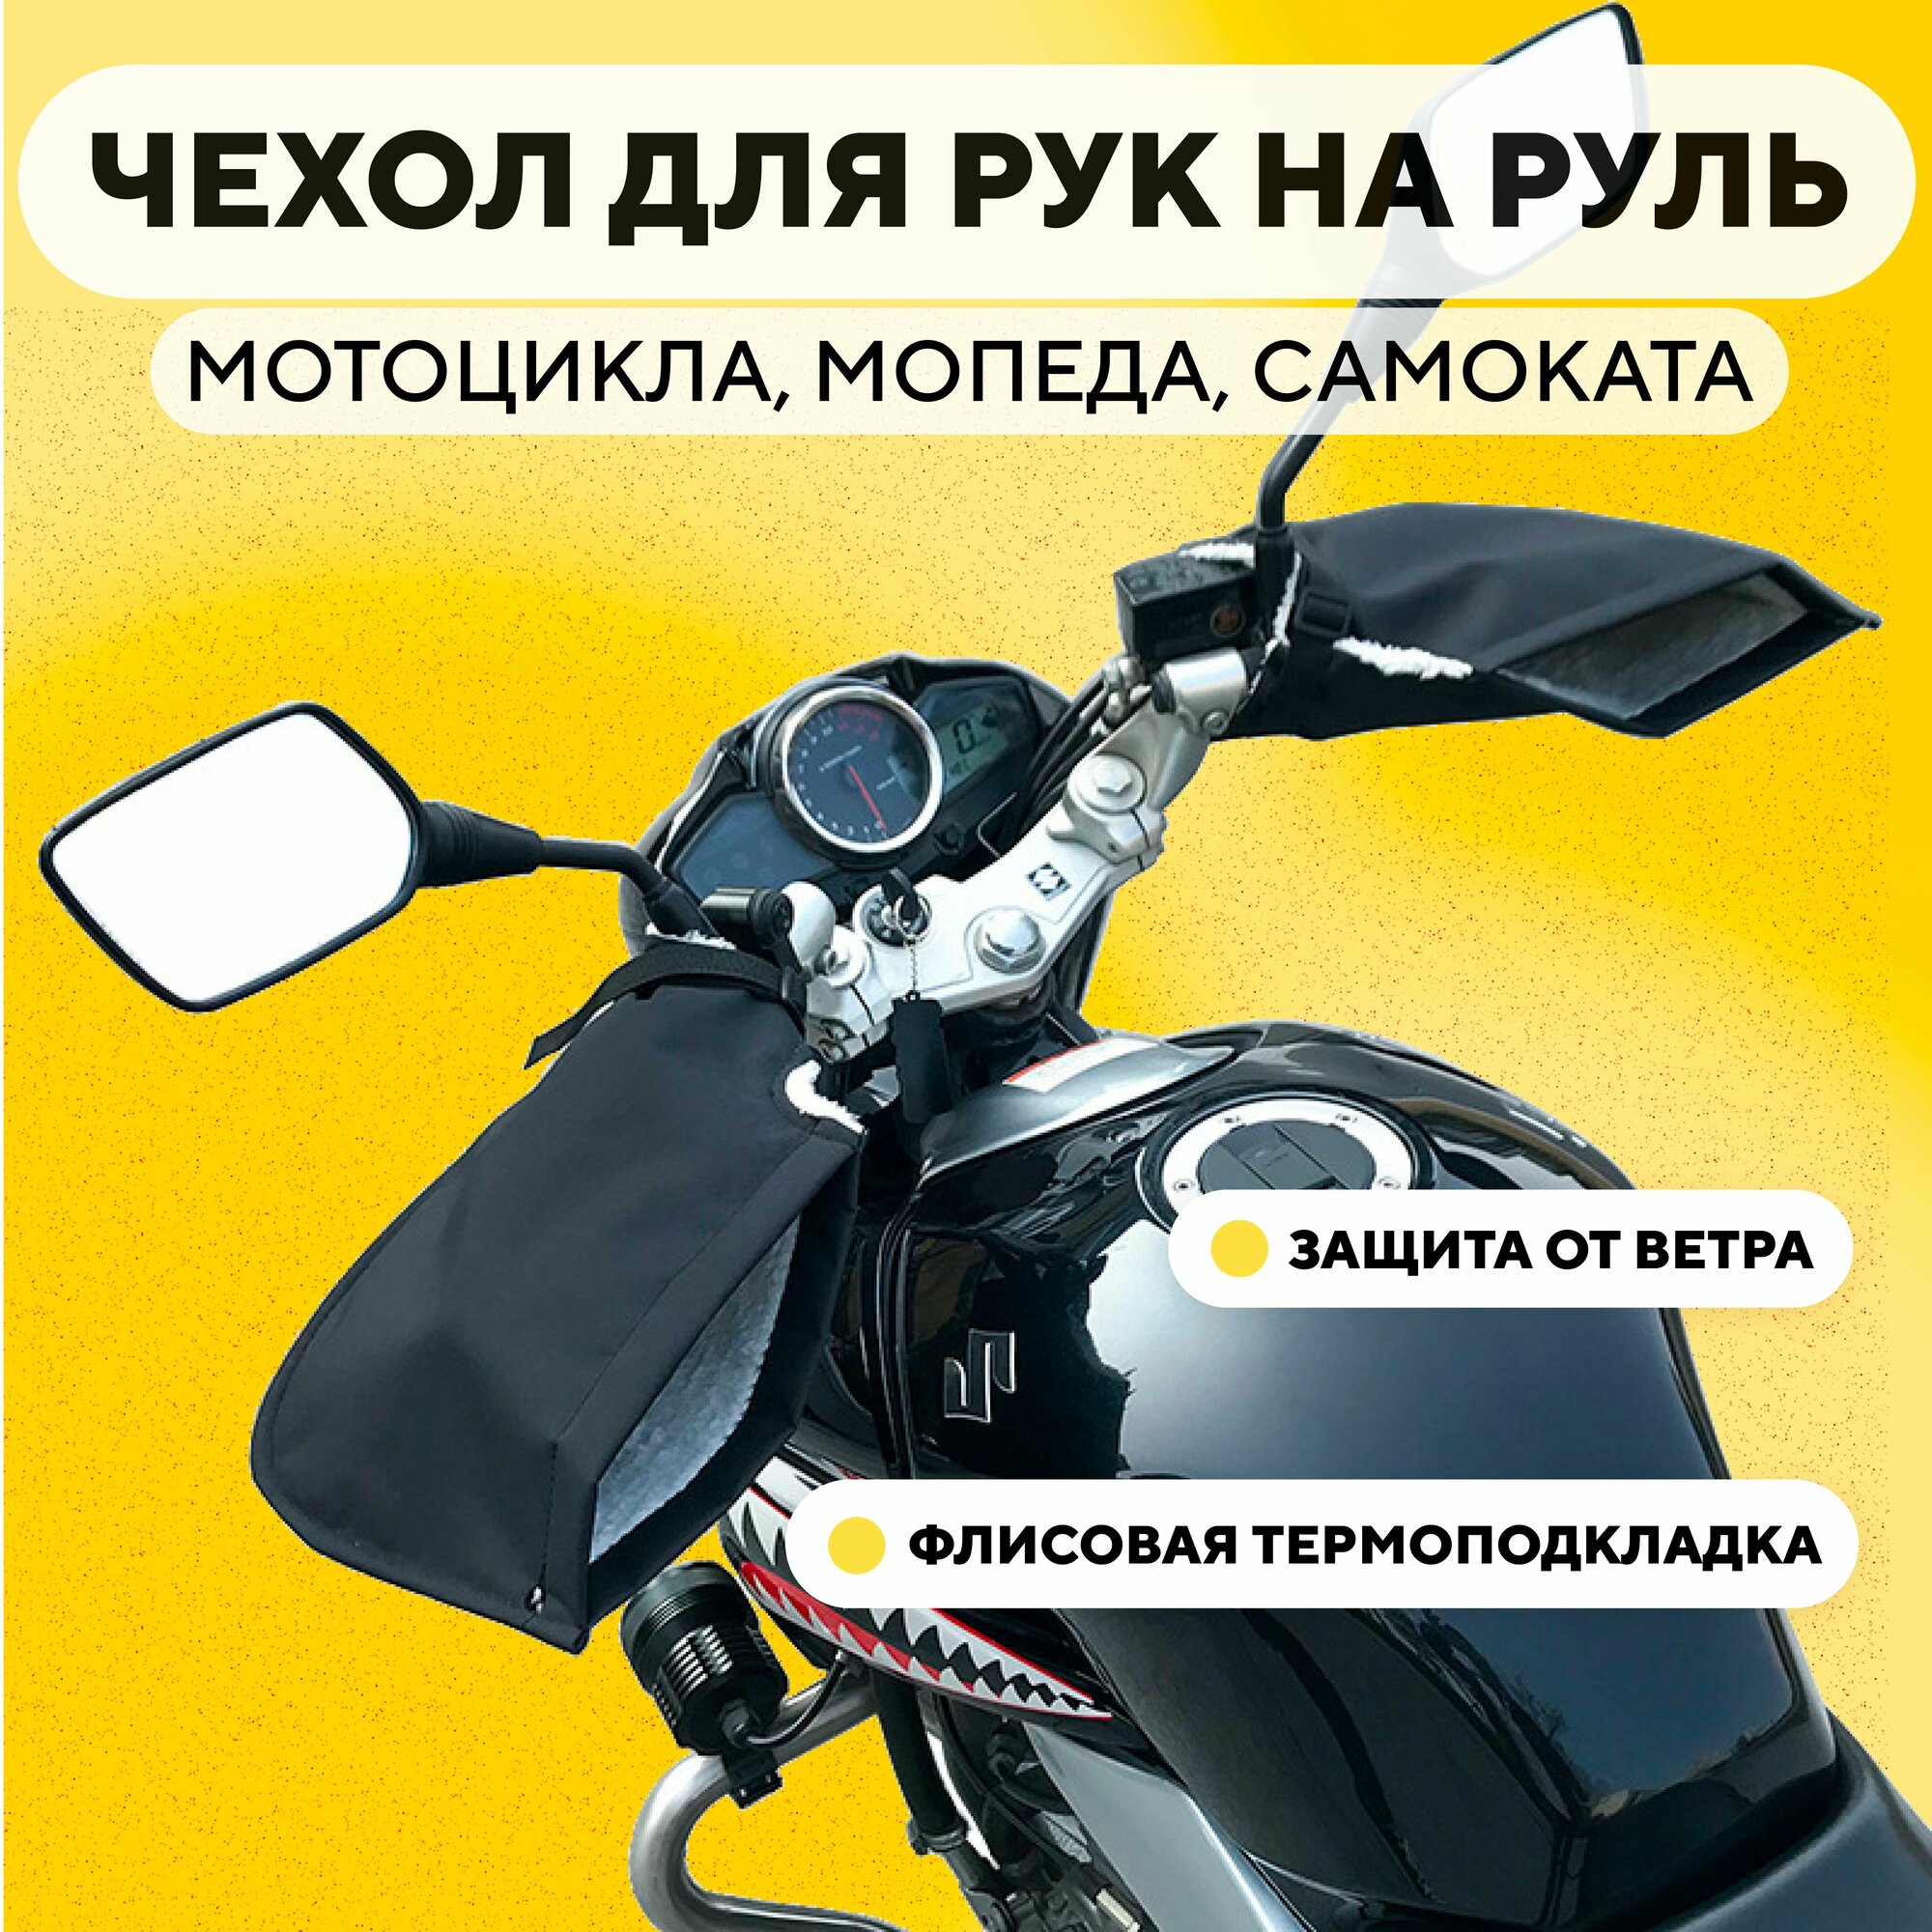 Перчатки ветрозащитные на руль мотоцикла, электросамоката, велосипеда (зимние непромокаемые чехлы-муфты)